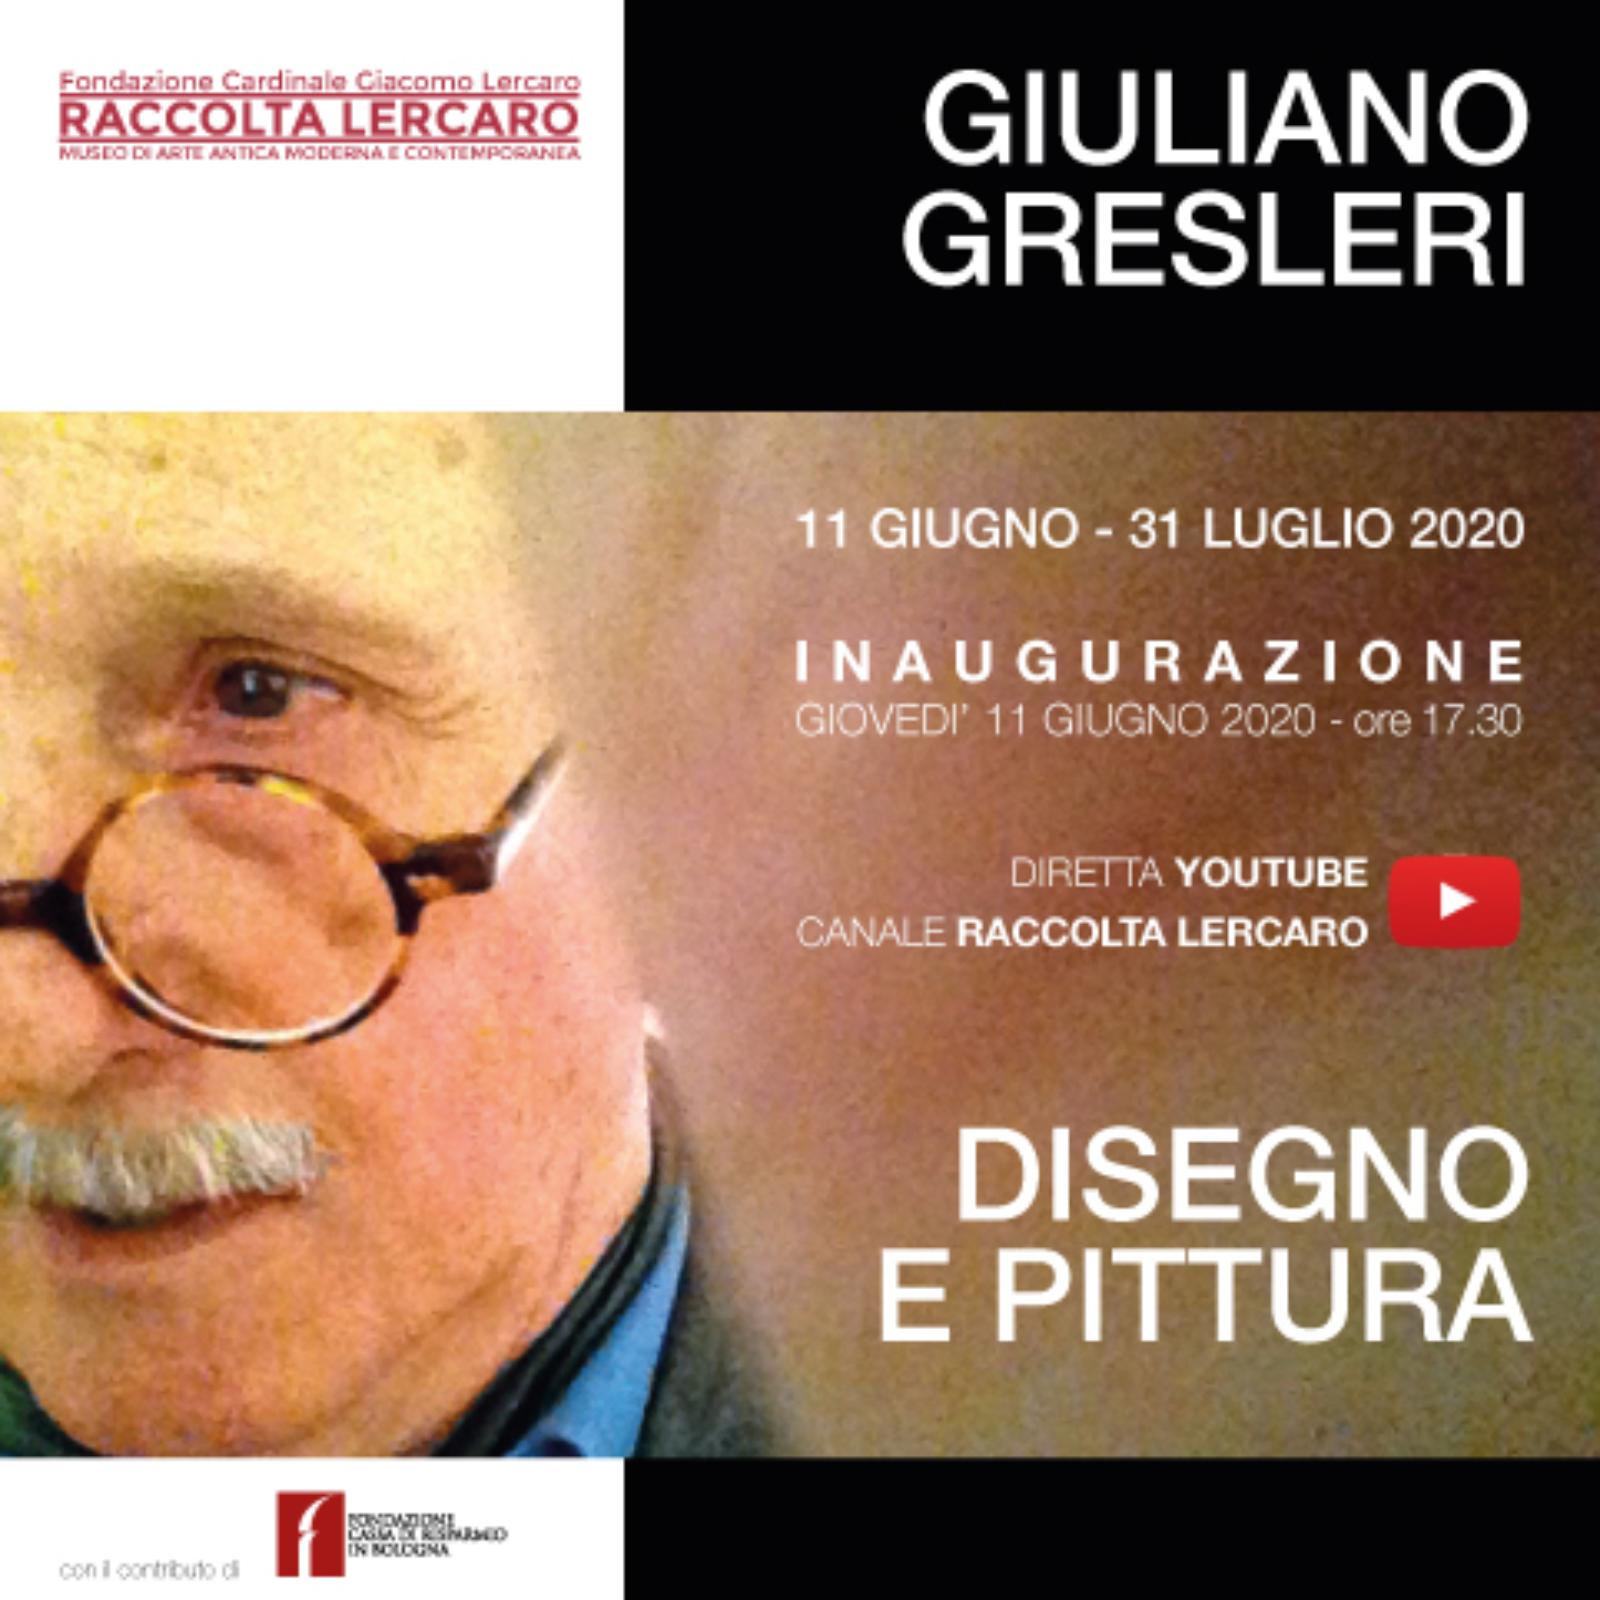 Giuliano Gresleri. Disegno e pittura